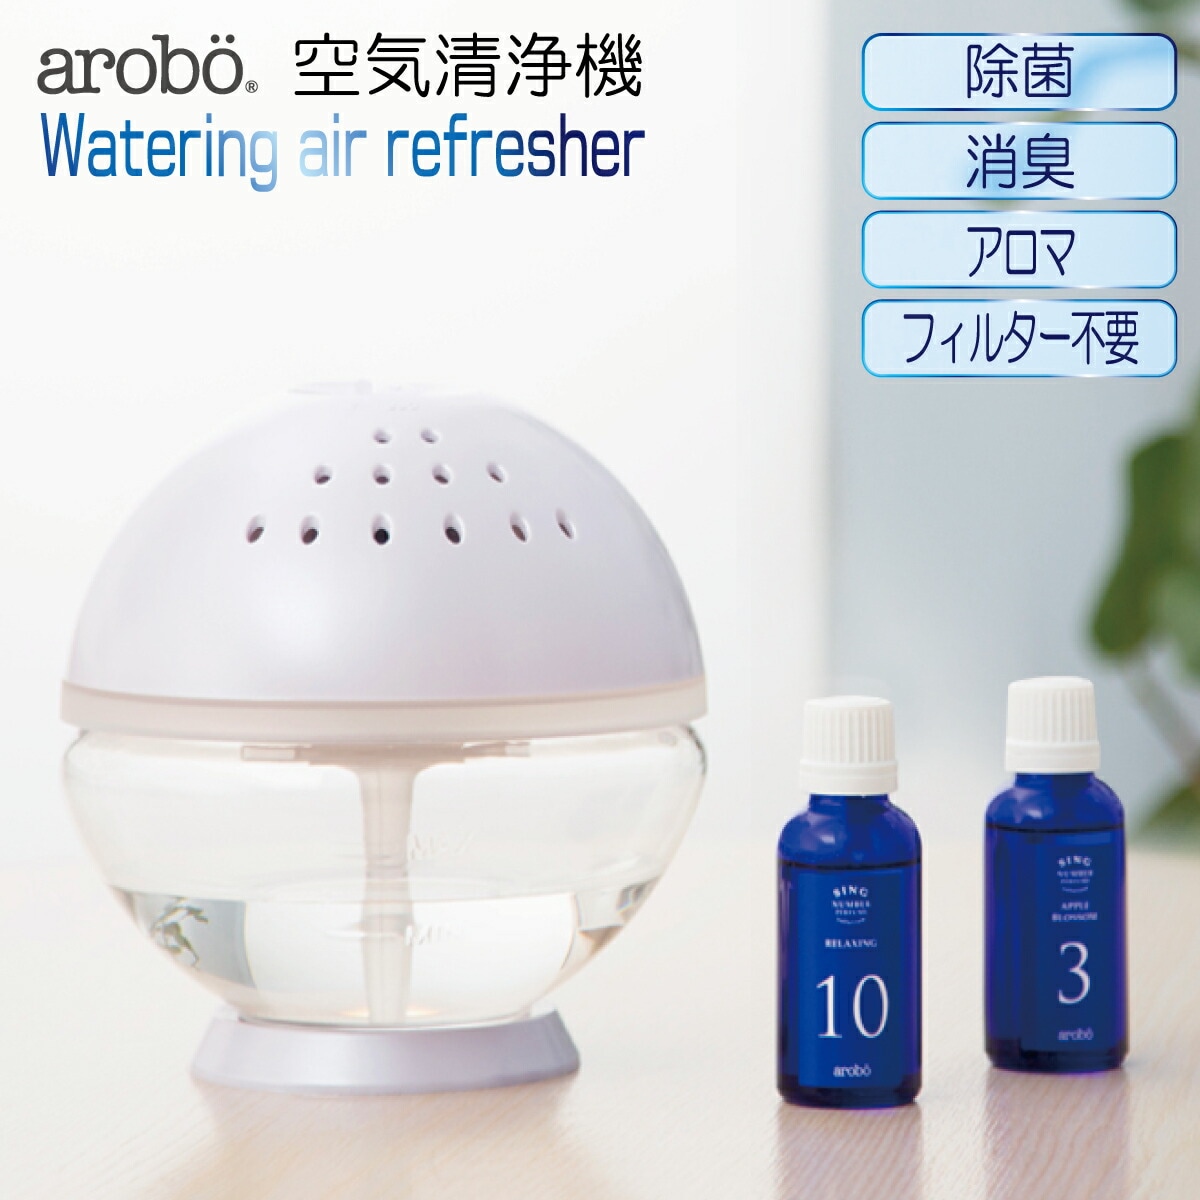 経典ブランド アロボ watering air refresher